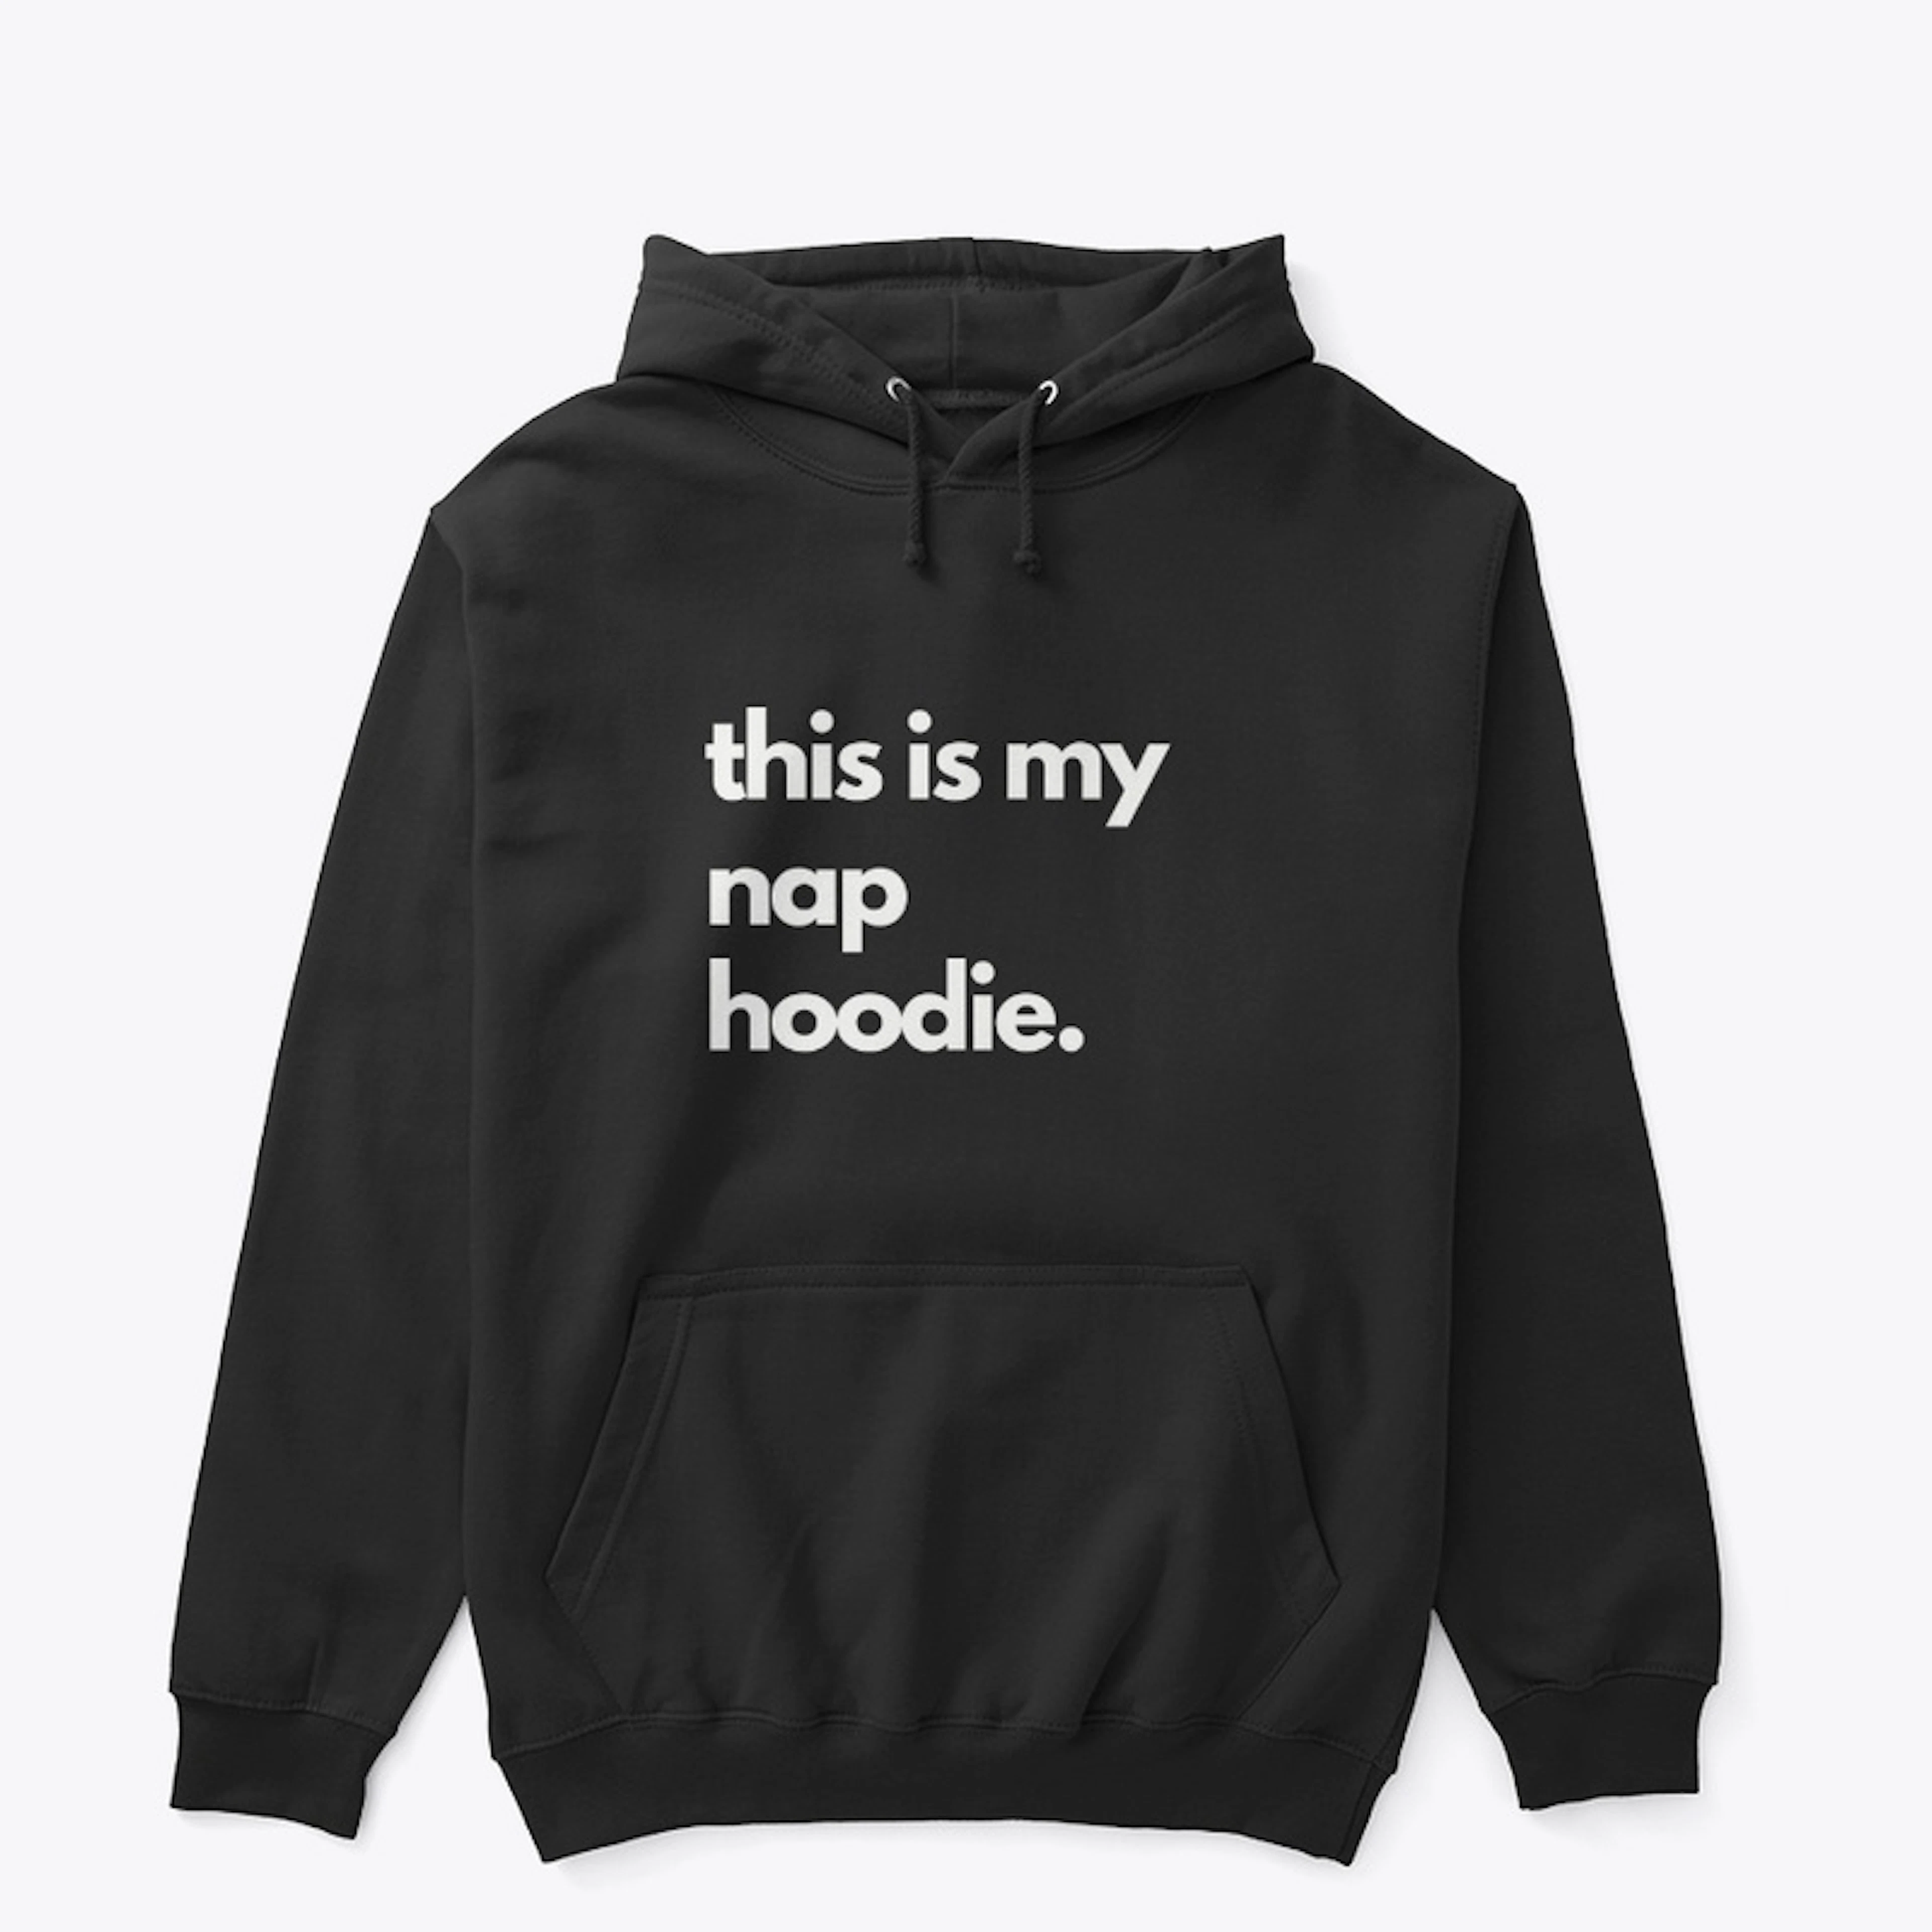 This is my nap hoodie